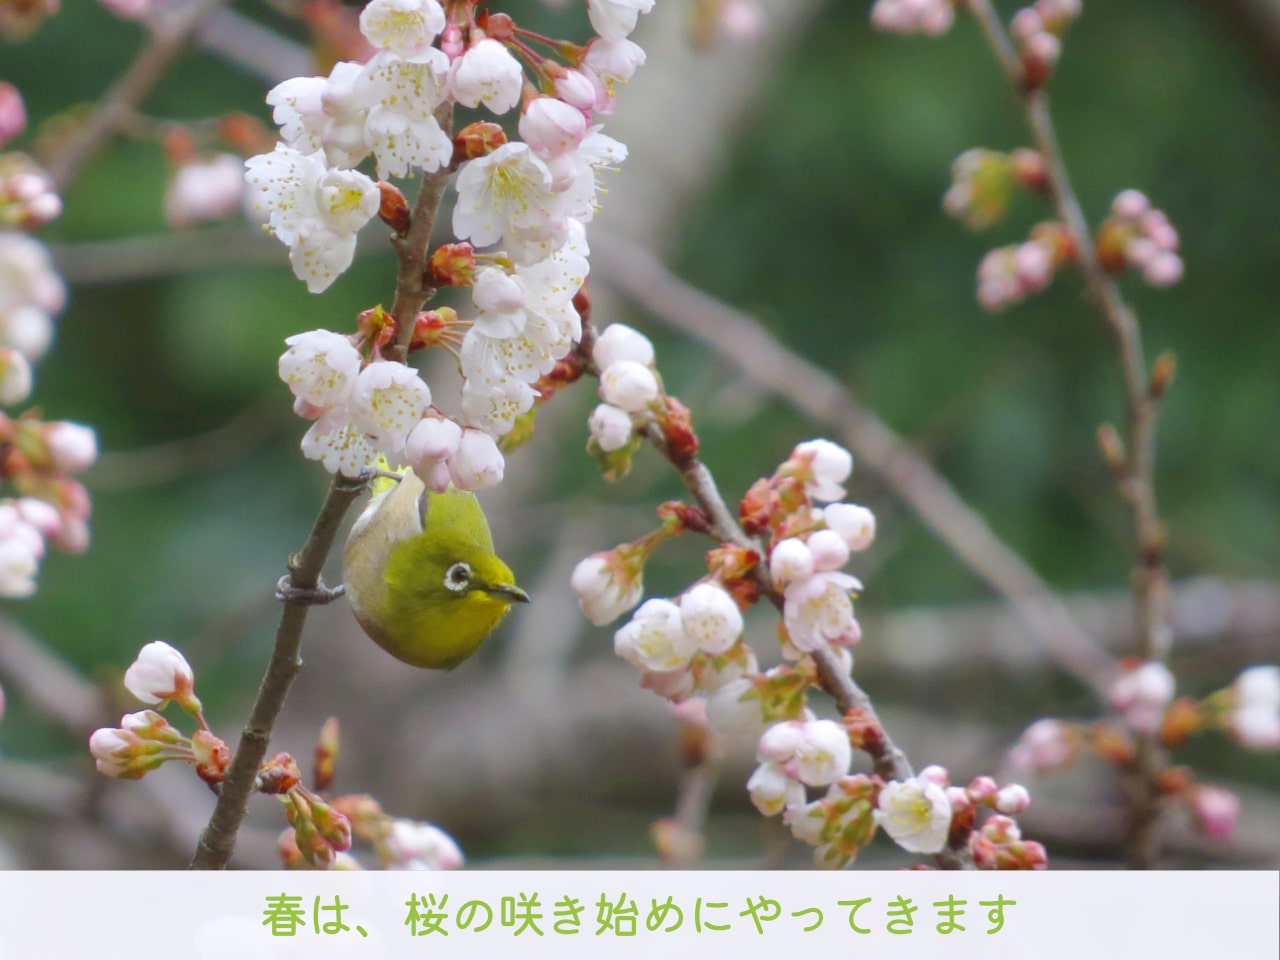 桜の木にやってきたメジロの写真